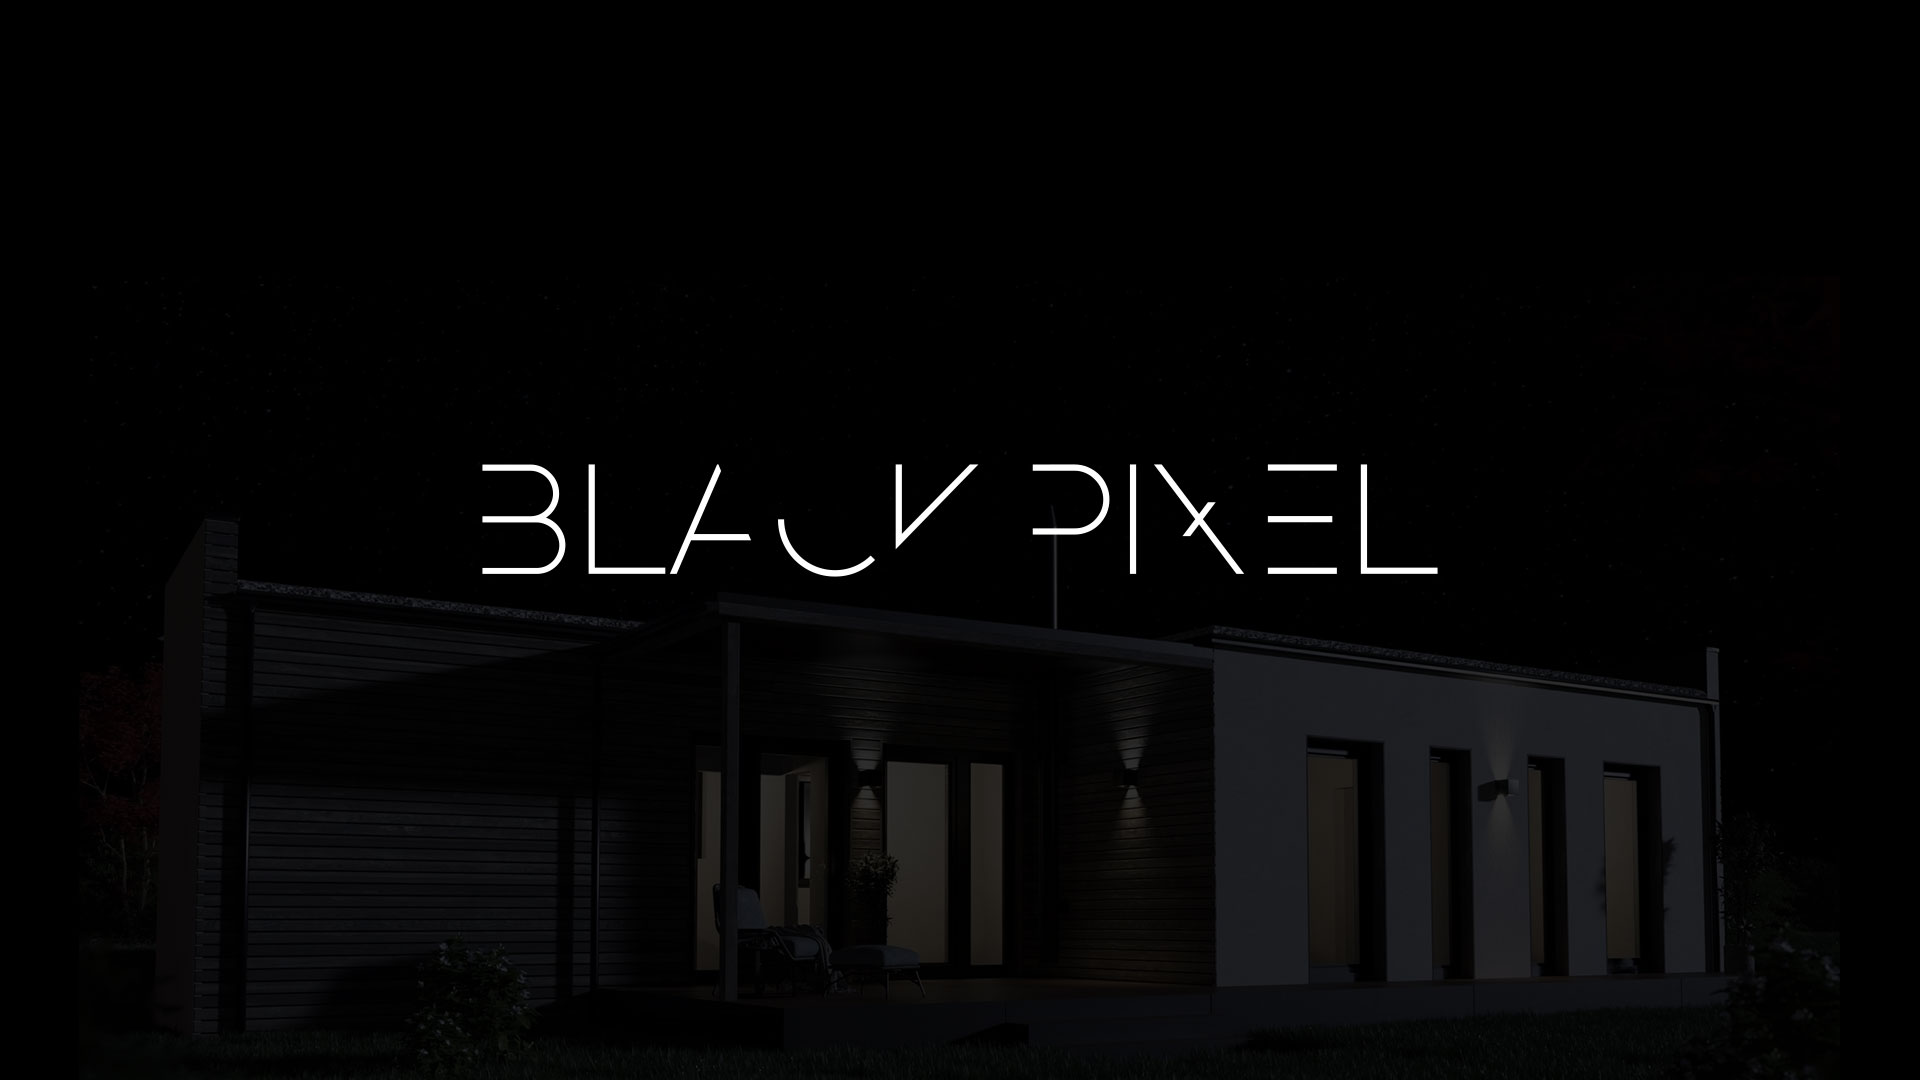 (c) Blackpixel.at